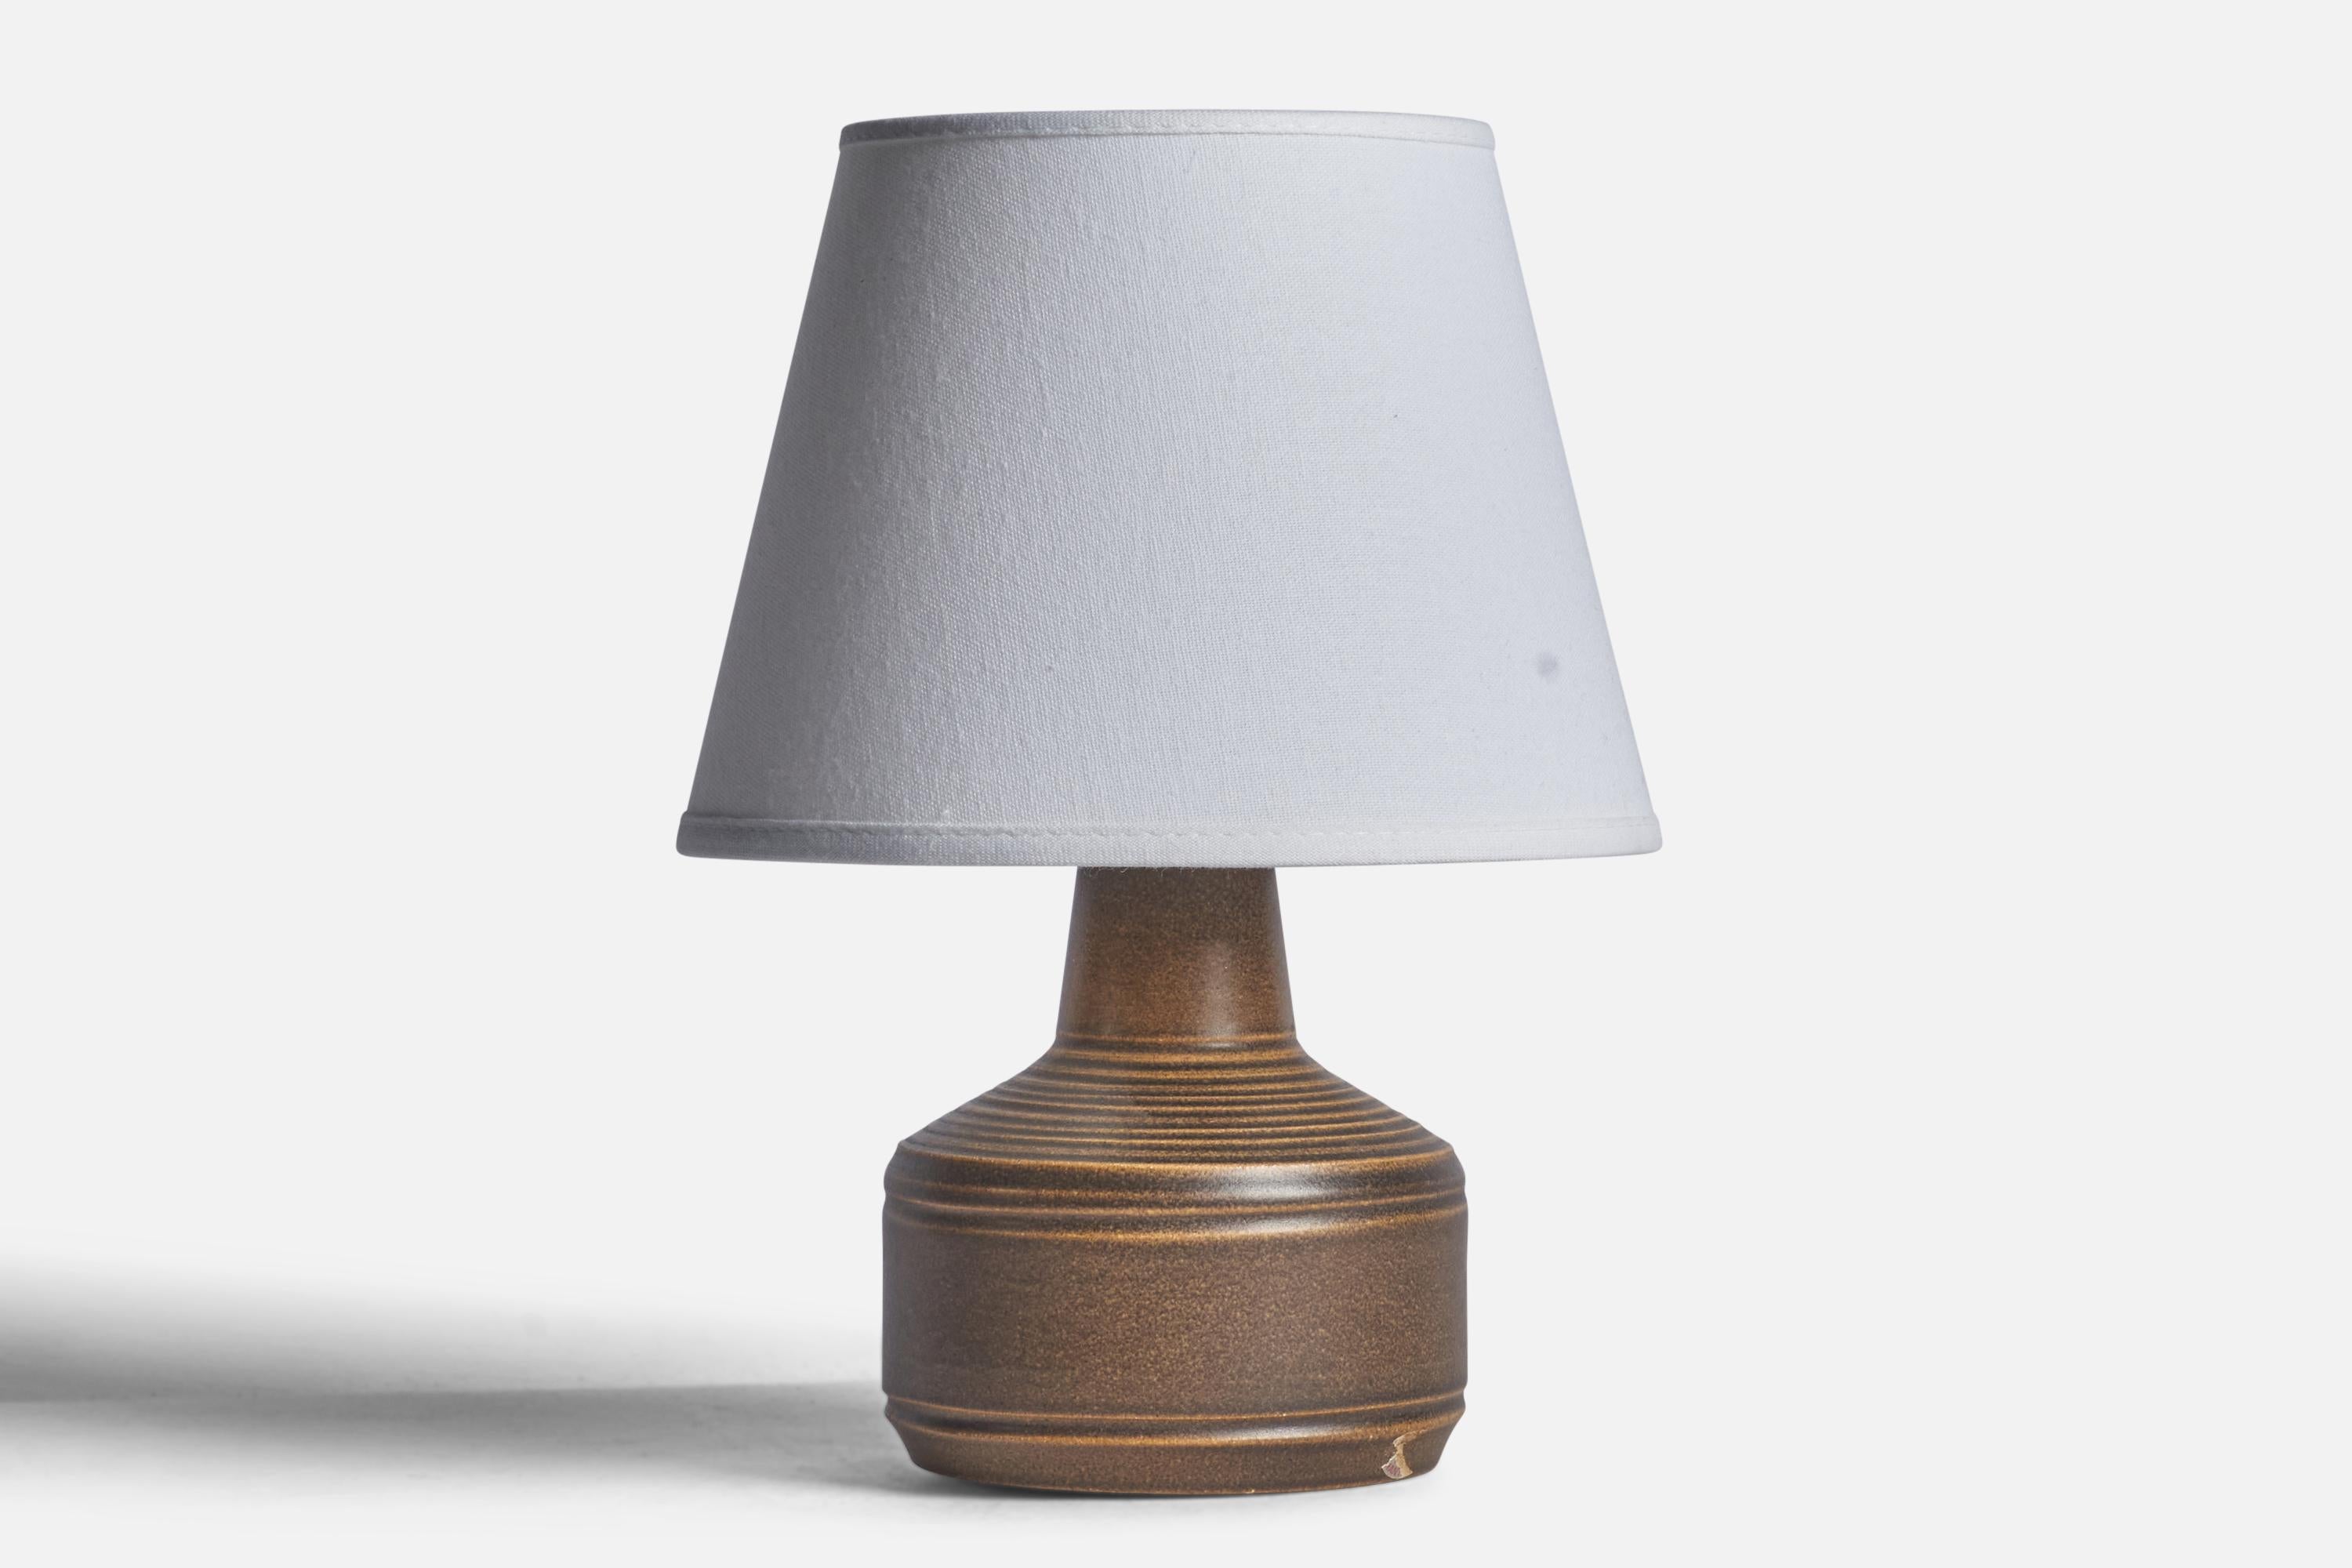 Tischlampe aus braun glasiertem Steingut, entworfen und hergestellt von Henry Brandi, Vejbystrand, Schweden, ca. 1960er Jahre.

Abmessungen der Lampe (Zoll):8,5